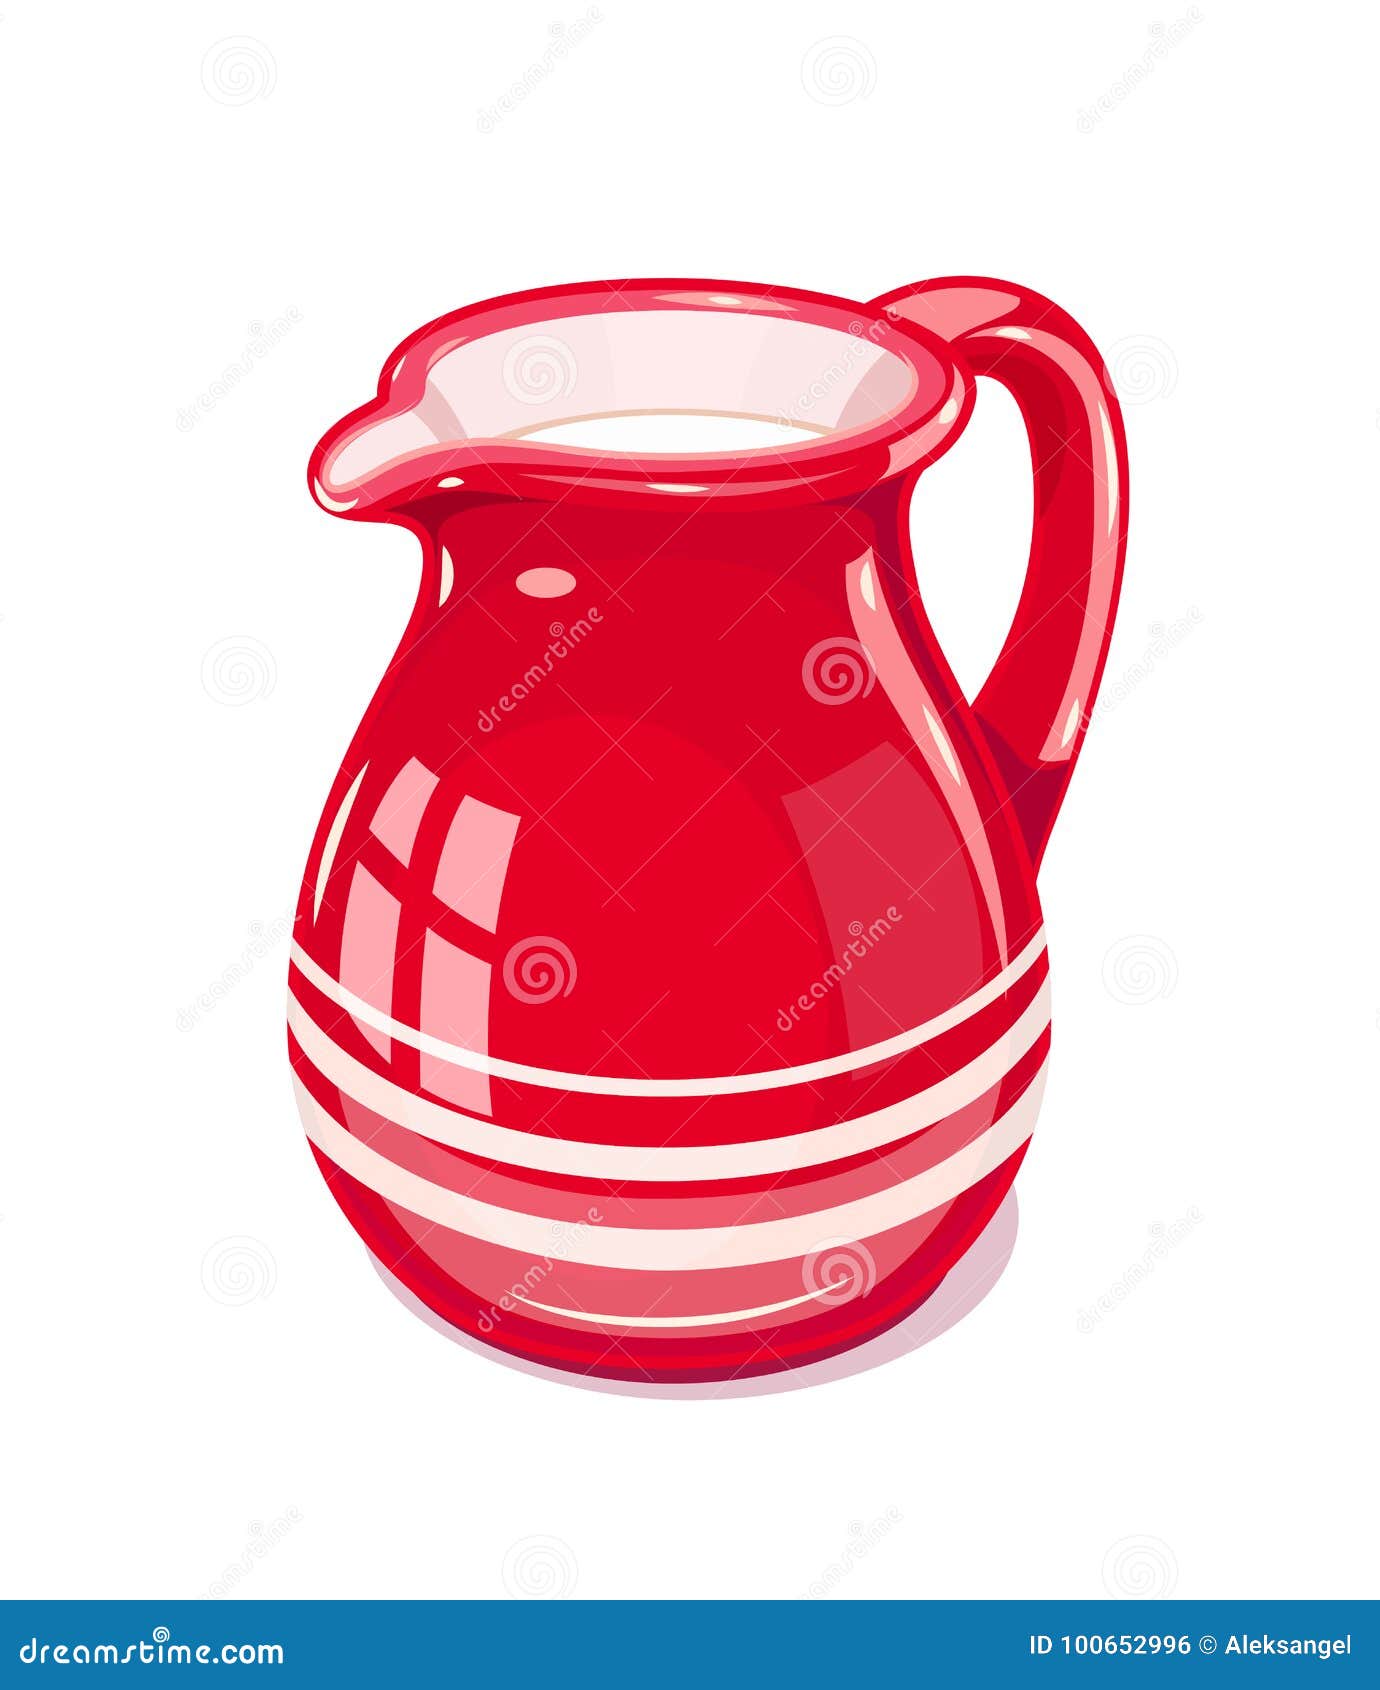 red ceramic jug with milk